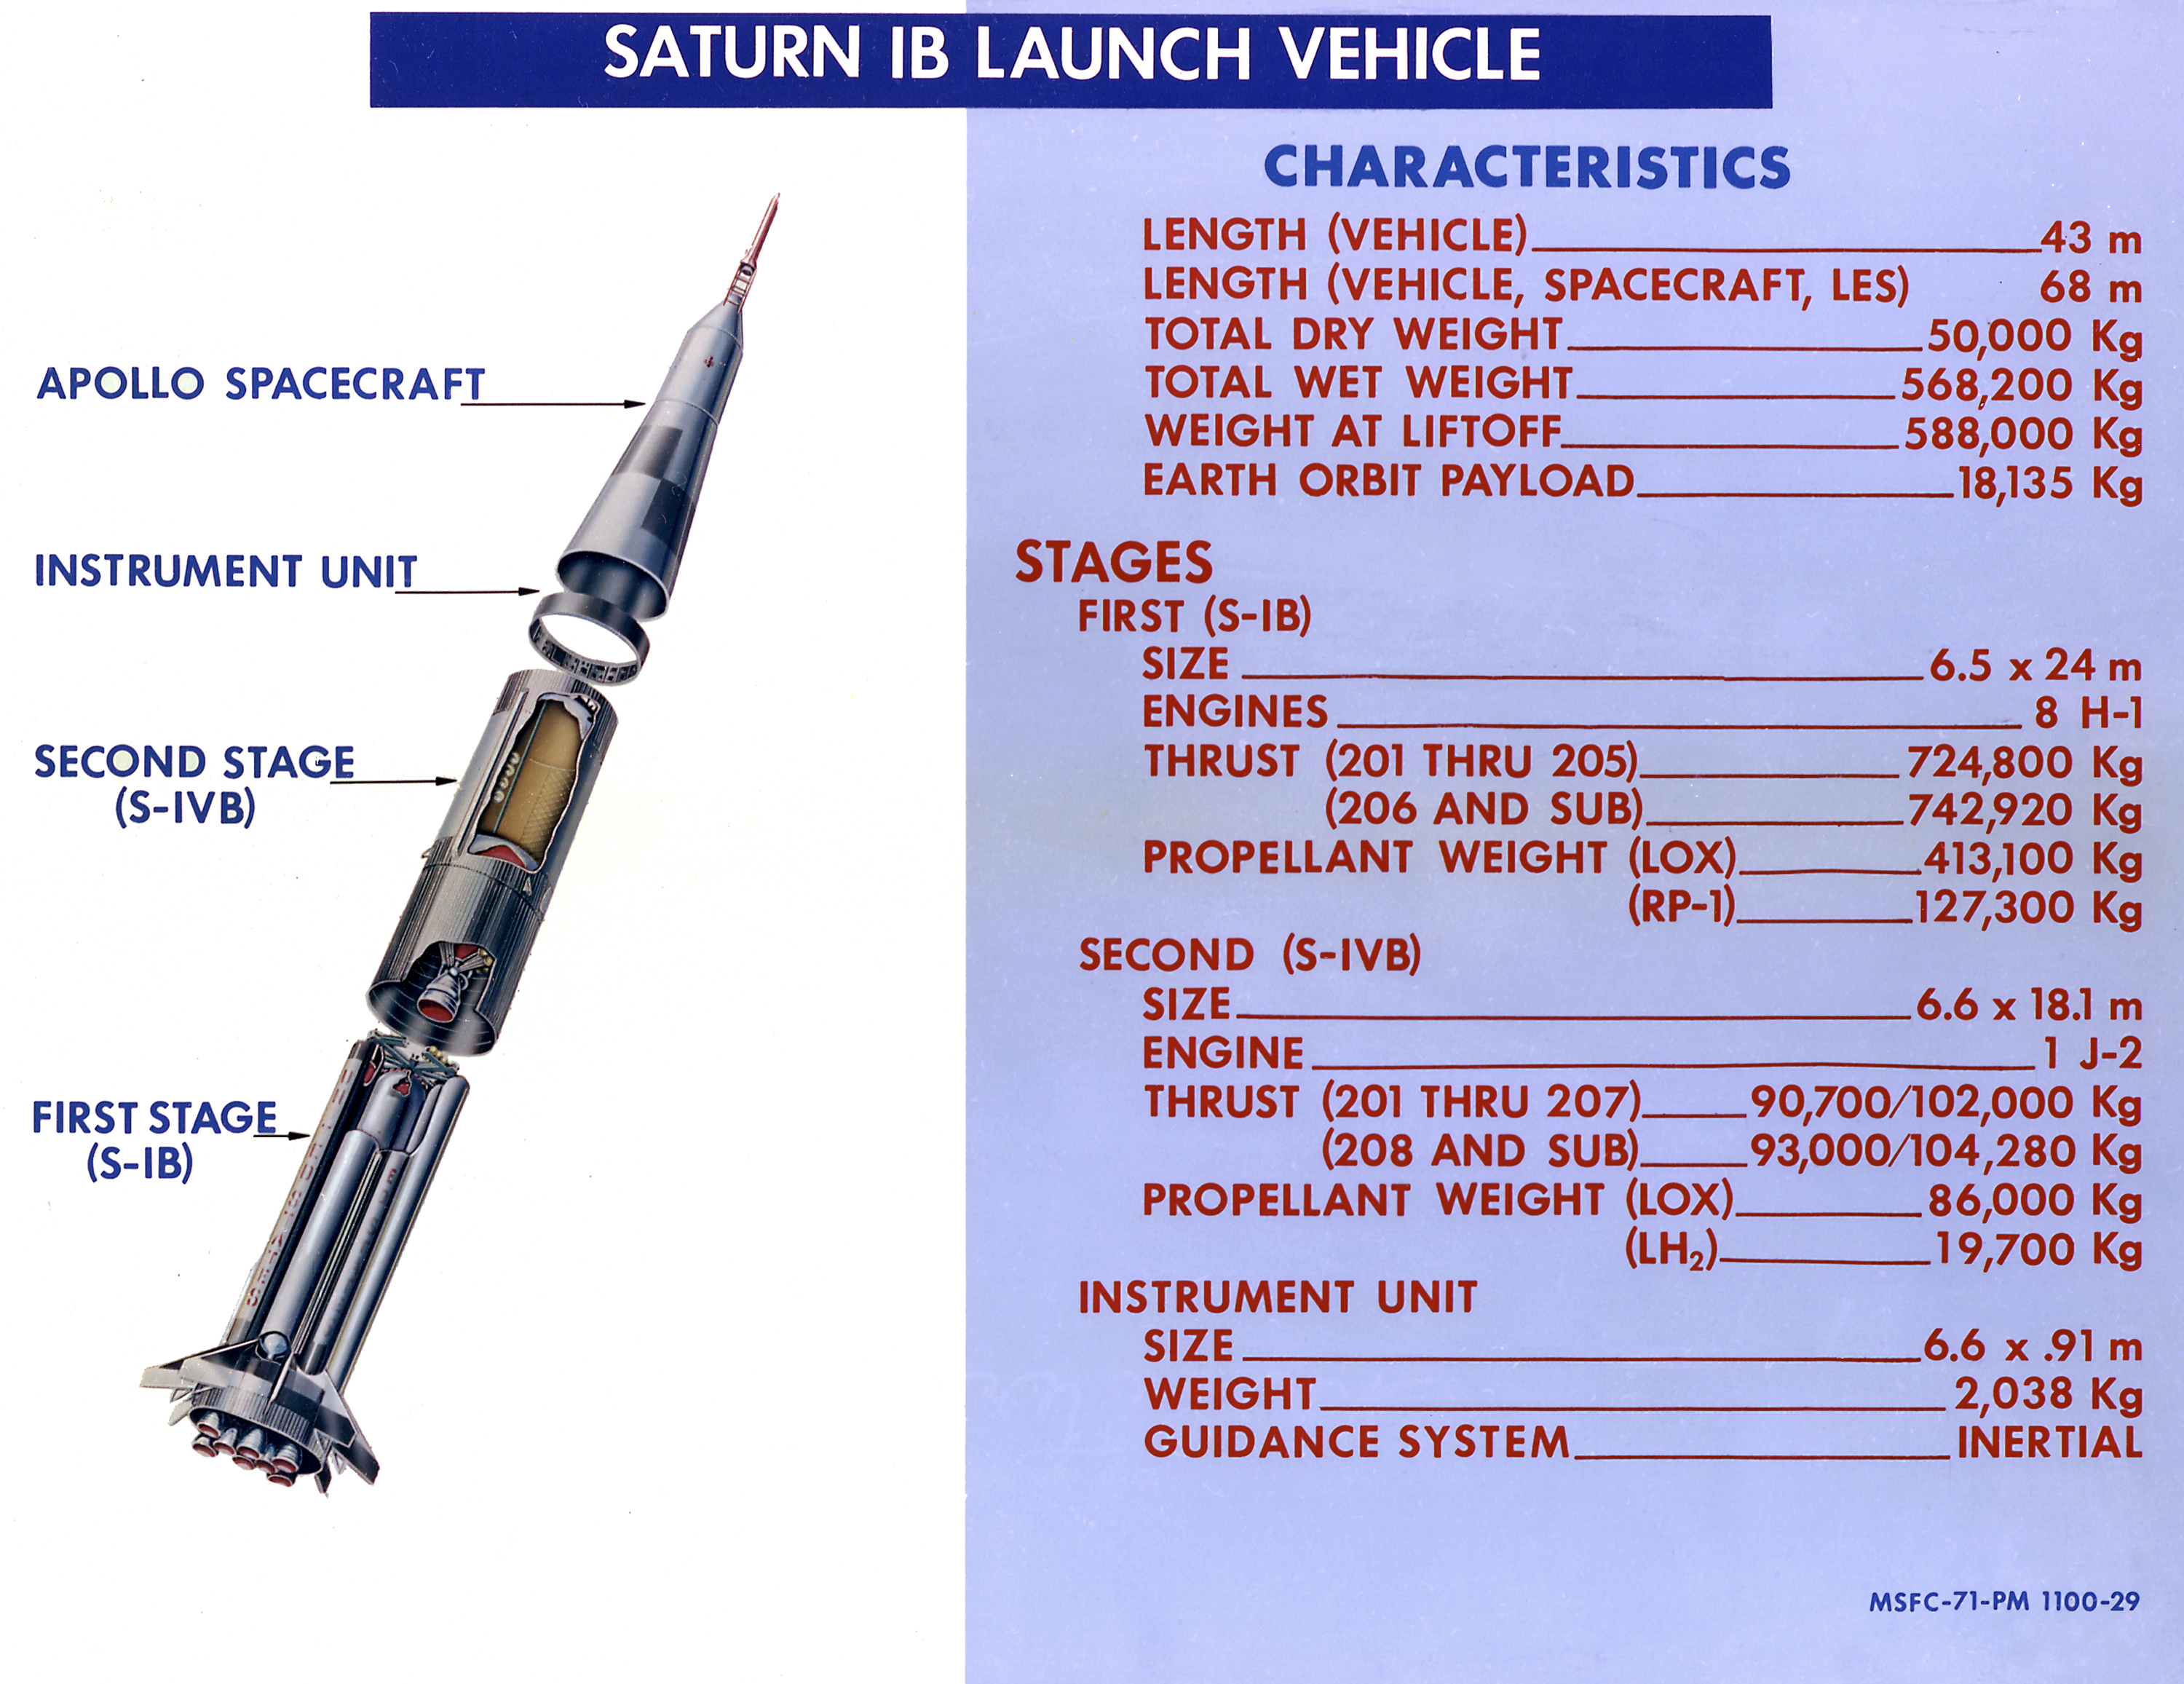 Saturn IB characteristics